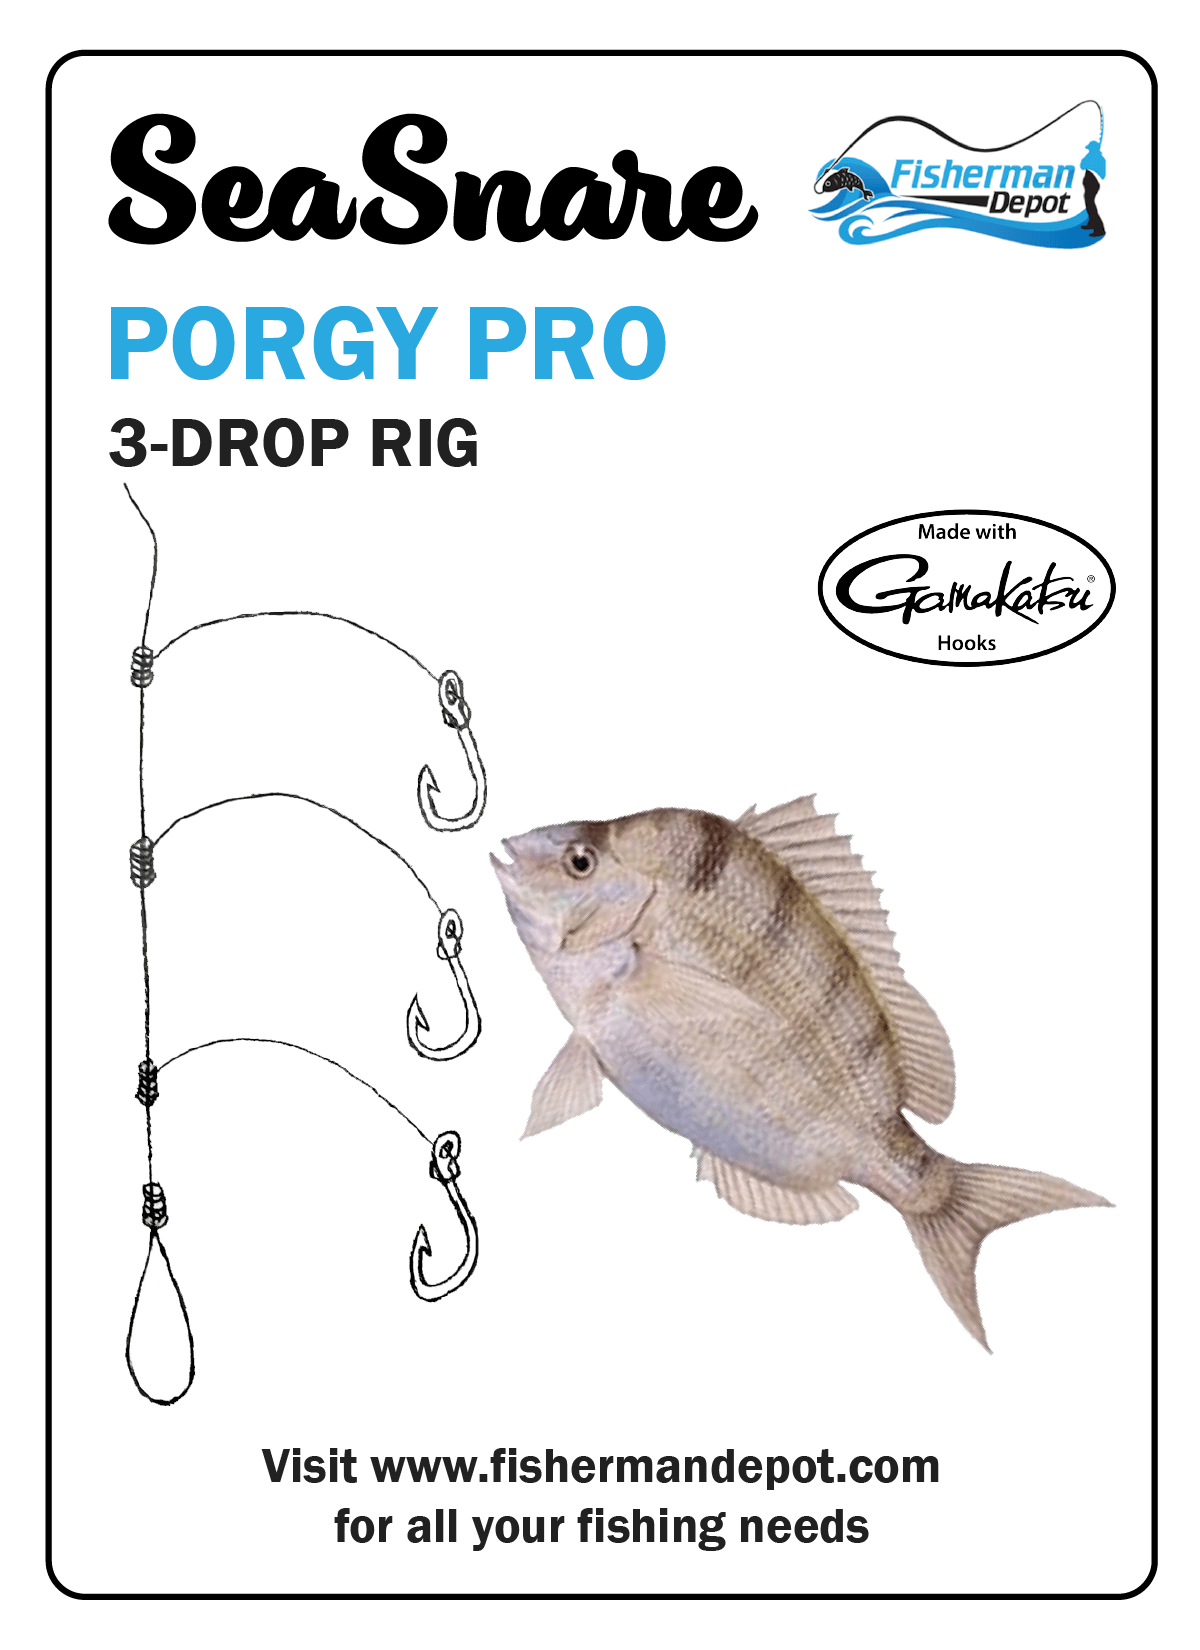 SeaSnare - Porgy Pro 3-Drop Rig 6/Pack / Gamakatsu / 2/0 Hook